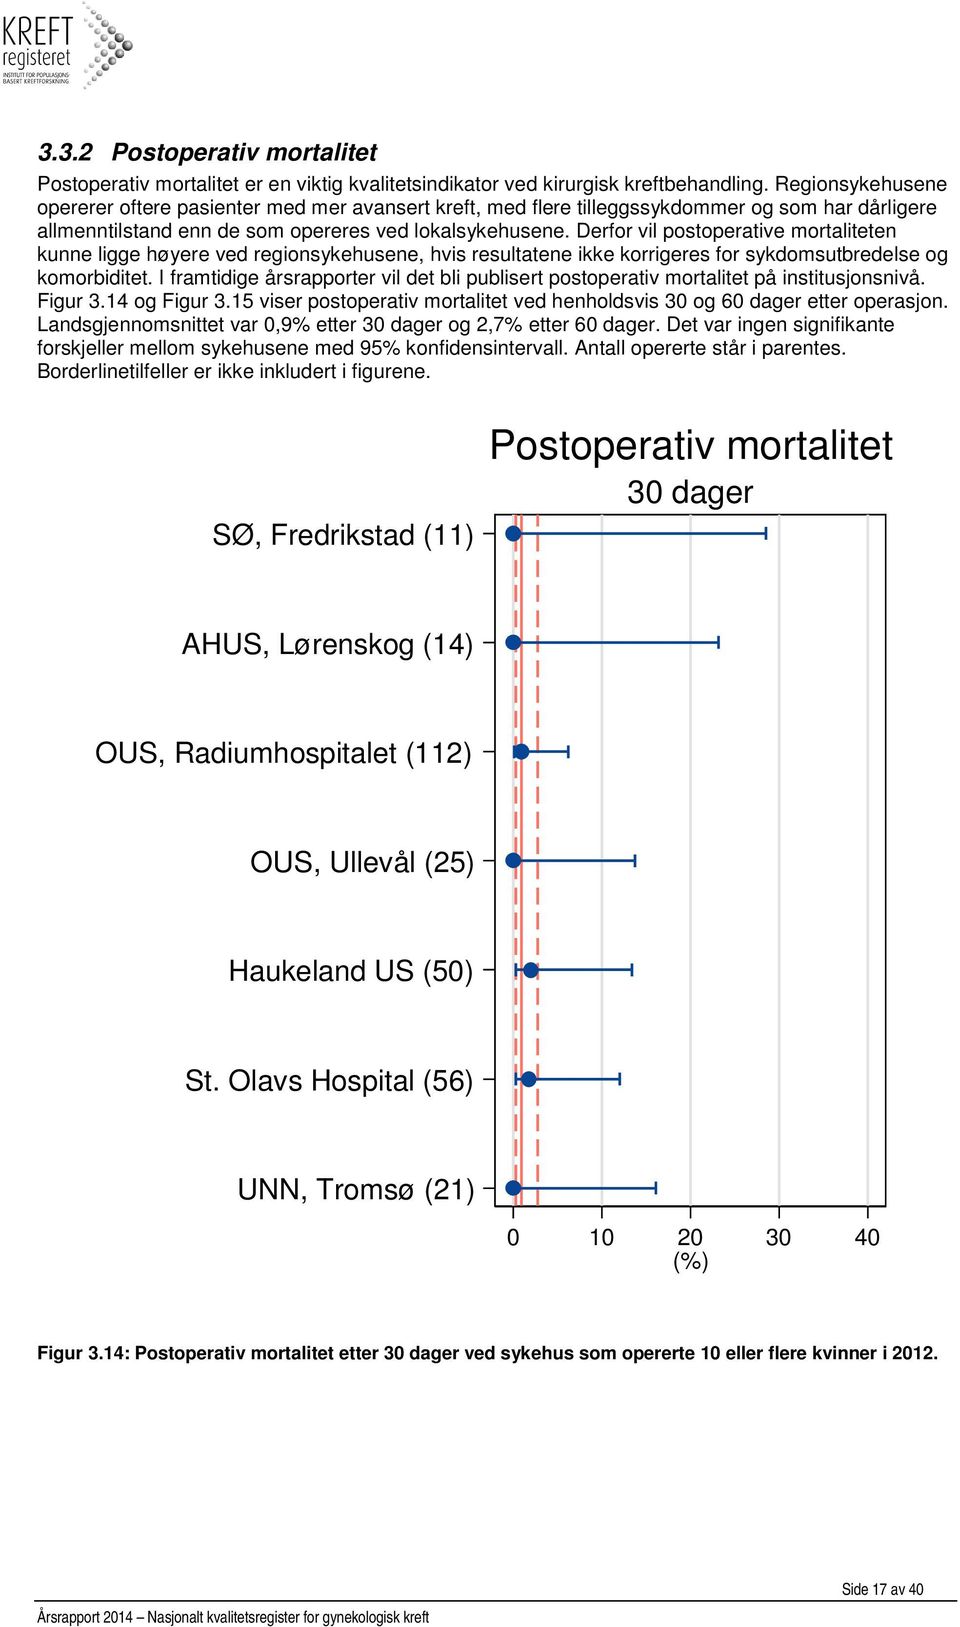 Derfor vil postoperative mortaliteten kunne ligge høyere ved regionsykehusene, hvis resultatene ikke korrigeres for sykdomsutbredelse og komorbiditet.